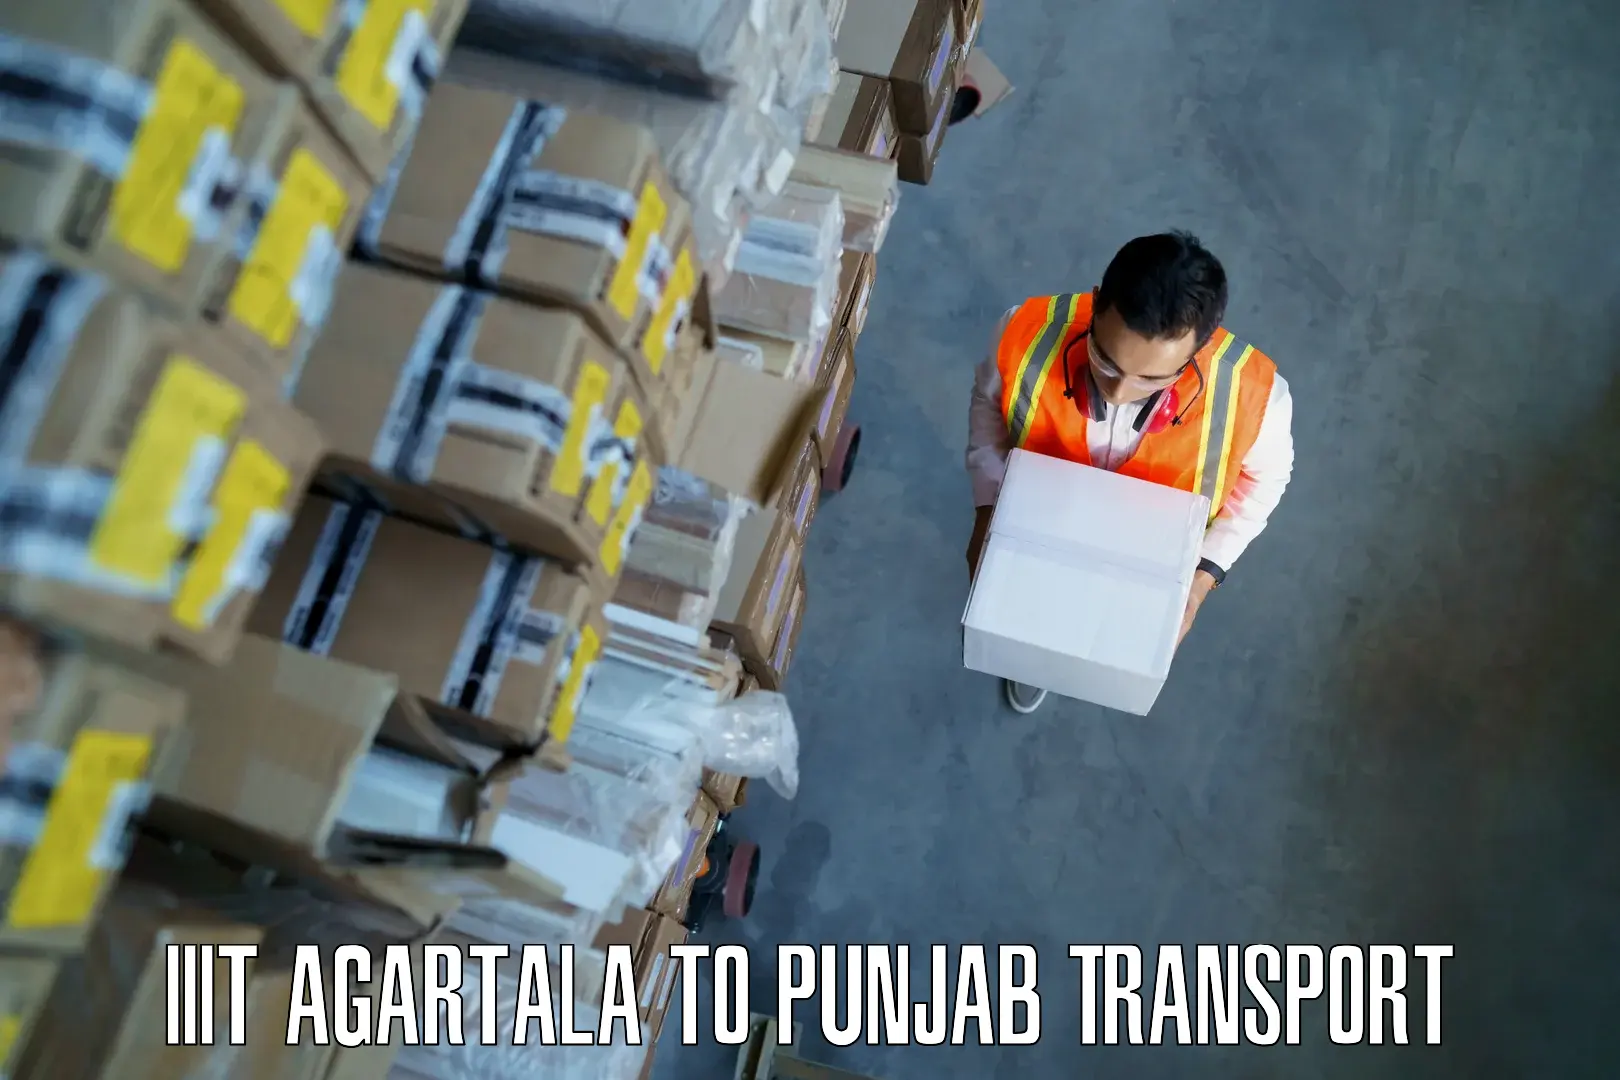 Luggage transport services IIIT Agartala to Muktsar